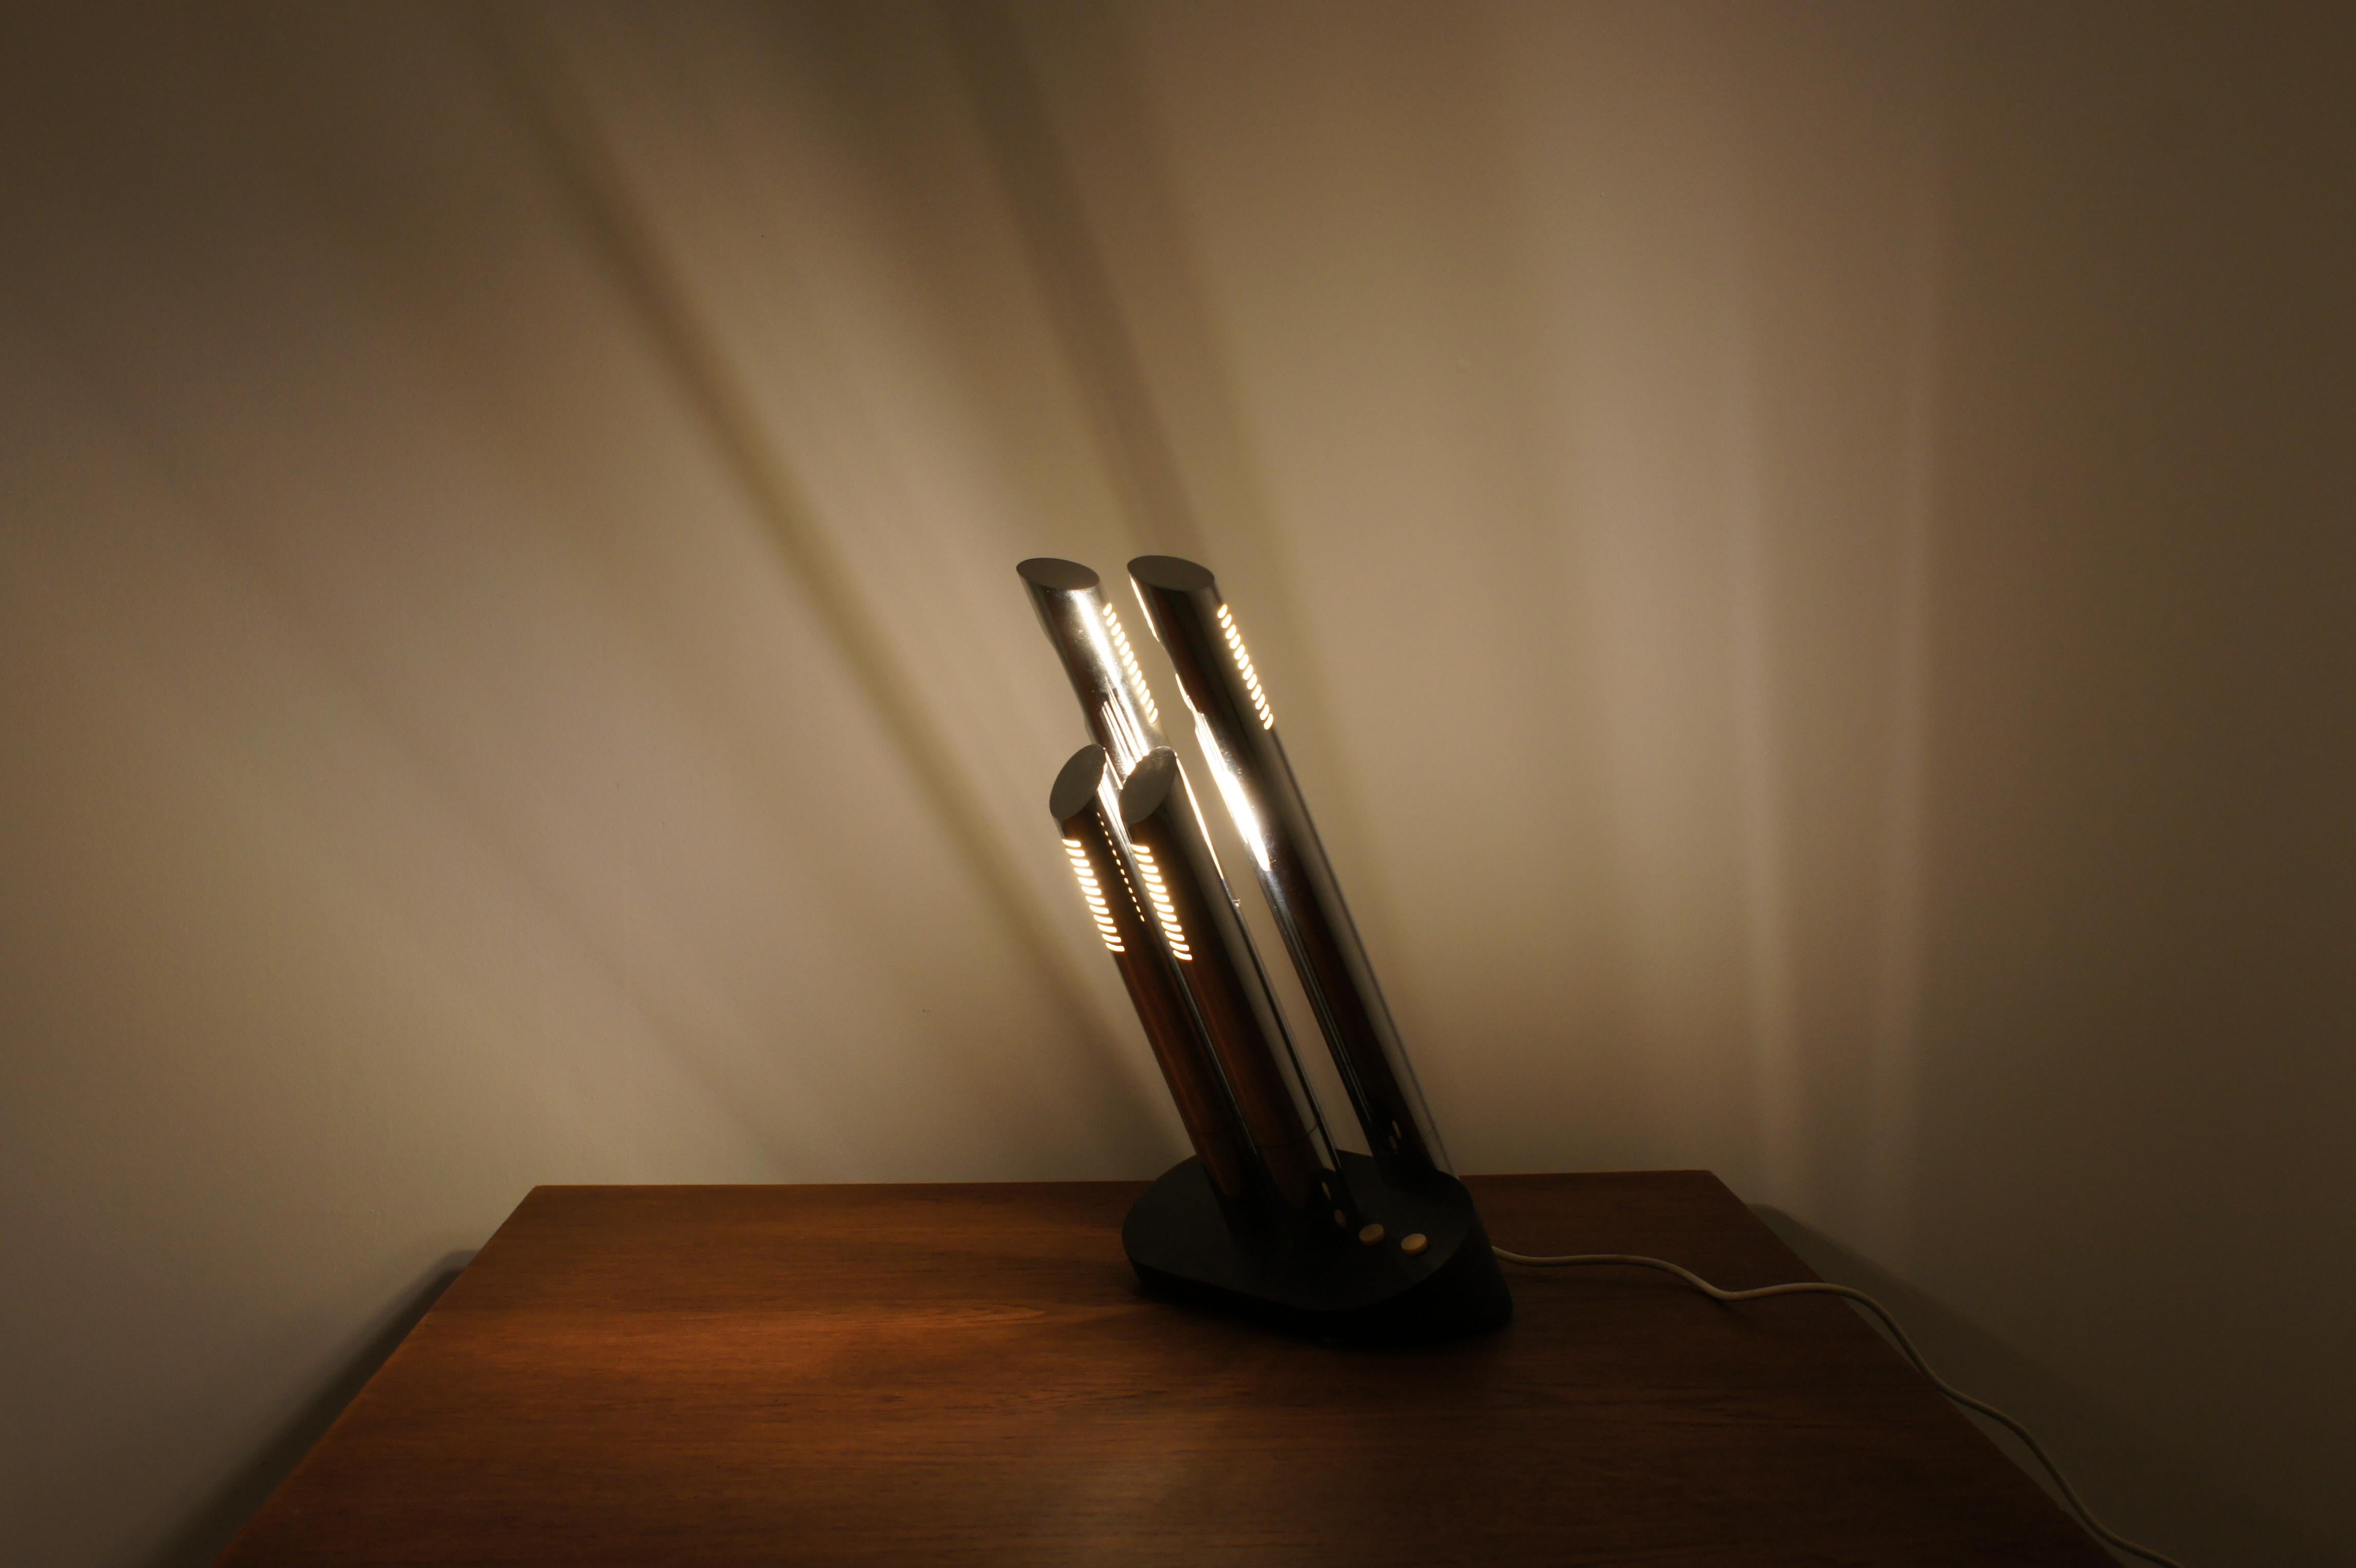 Lampada da tavolo prodotta da 'luci illuminazione' disegnata da Mario Faggian negli anni 70.

Modello T443 , chiamata anche 'president lamp'.

Quattro fonti di luce orientabili accendibili separatamente a coppie.

La lampada è conservata,si presenta